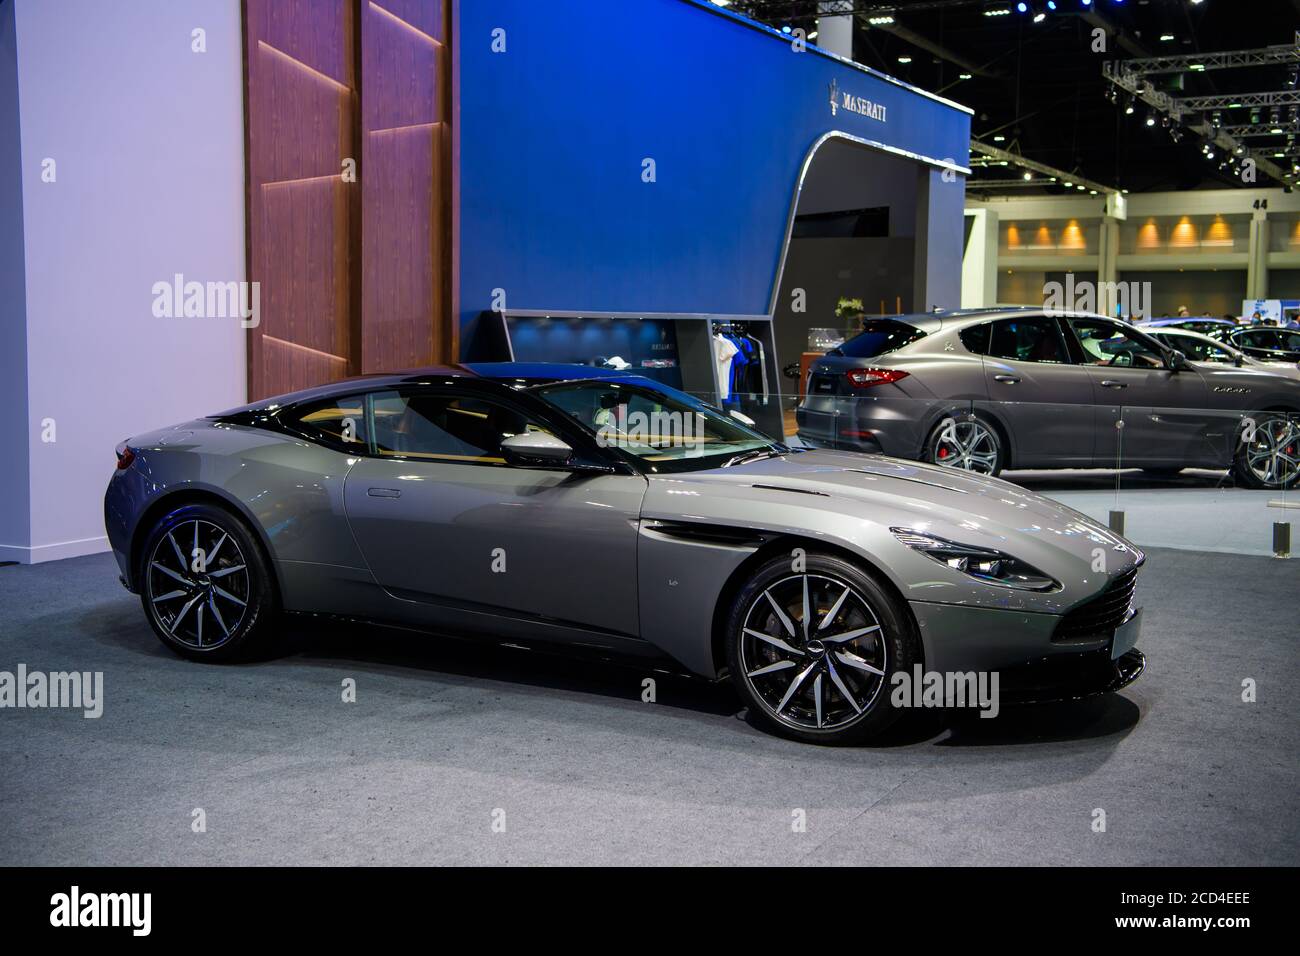 Aston Martin Db11 Stockfotos und -bilder Kaufen - Alamy